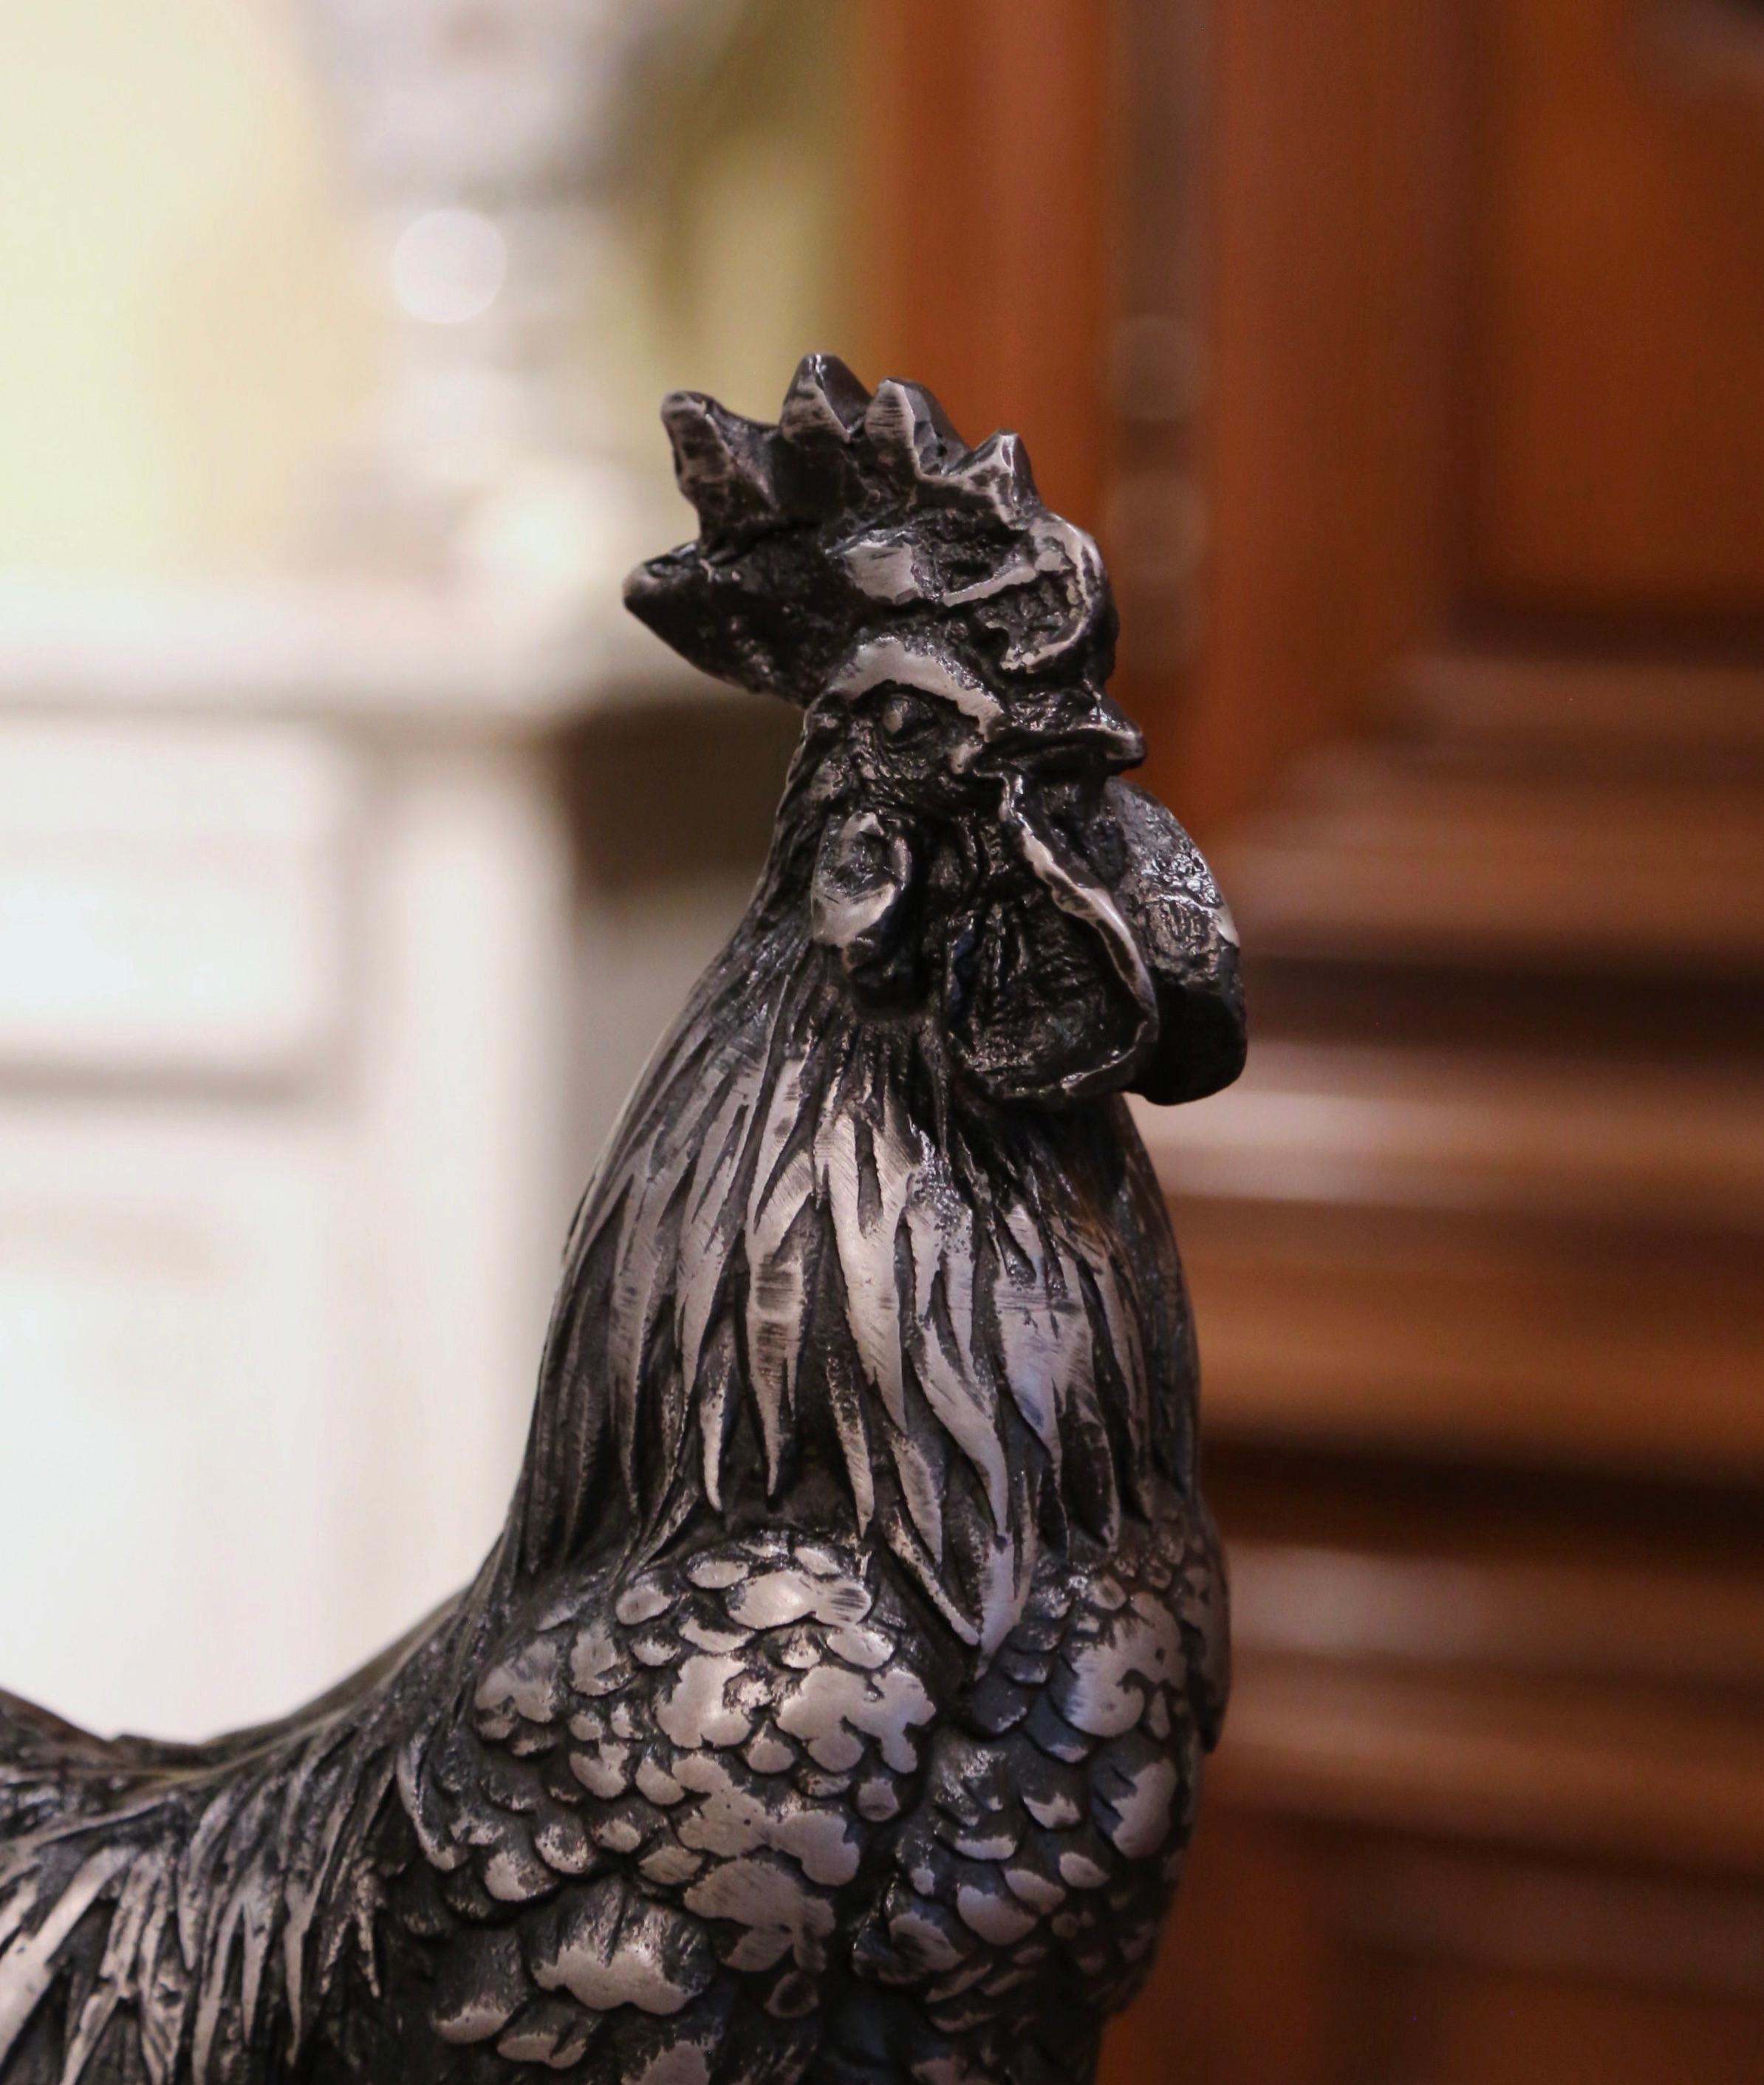 Dekorieren Sie eine Küche oder einen Frühstücksraum mit diesem antiken Eisenhahn. Die um 1920 in Frankreich gefertigte, hohe Skulptur zeigt einen majestätischen Hahn, der auf einem runden Sockel steht. Der elegante Vogel, das Symbol Frankreichs, ist